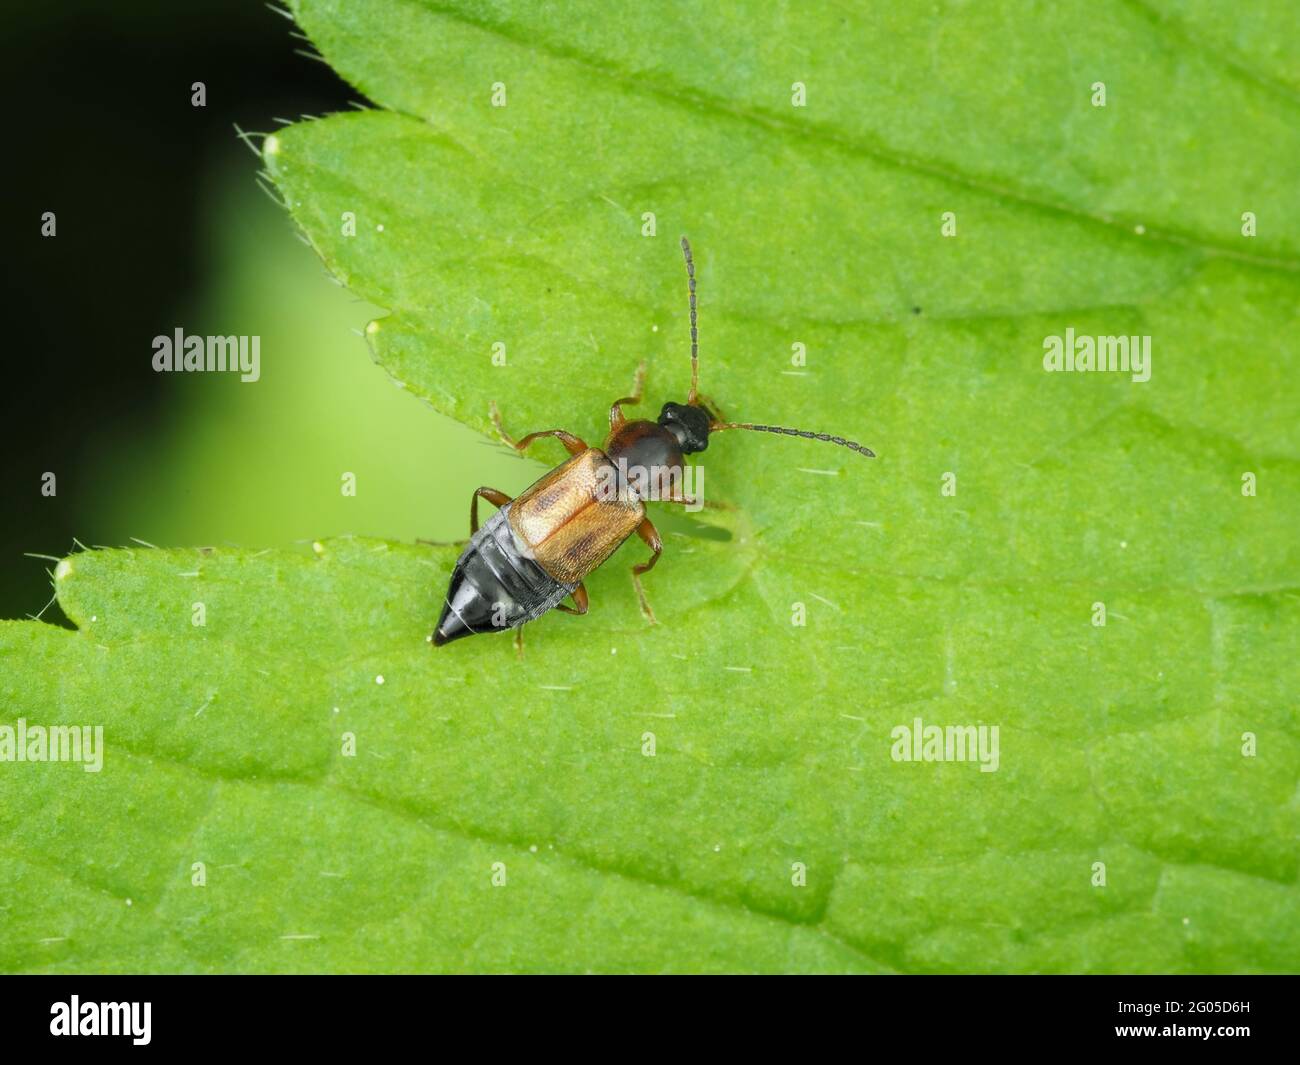 Rotkäfer im Stamm Anthophagini, möglicherweise Pelecomalium sp. - Insektenmakro Stockfoto